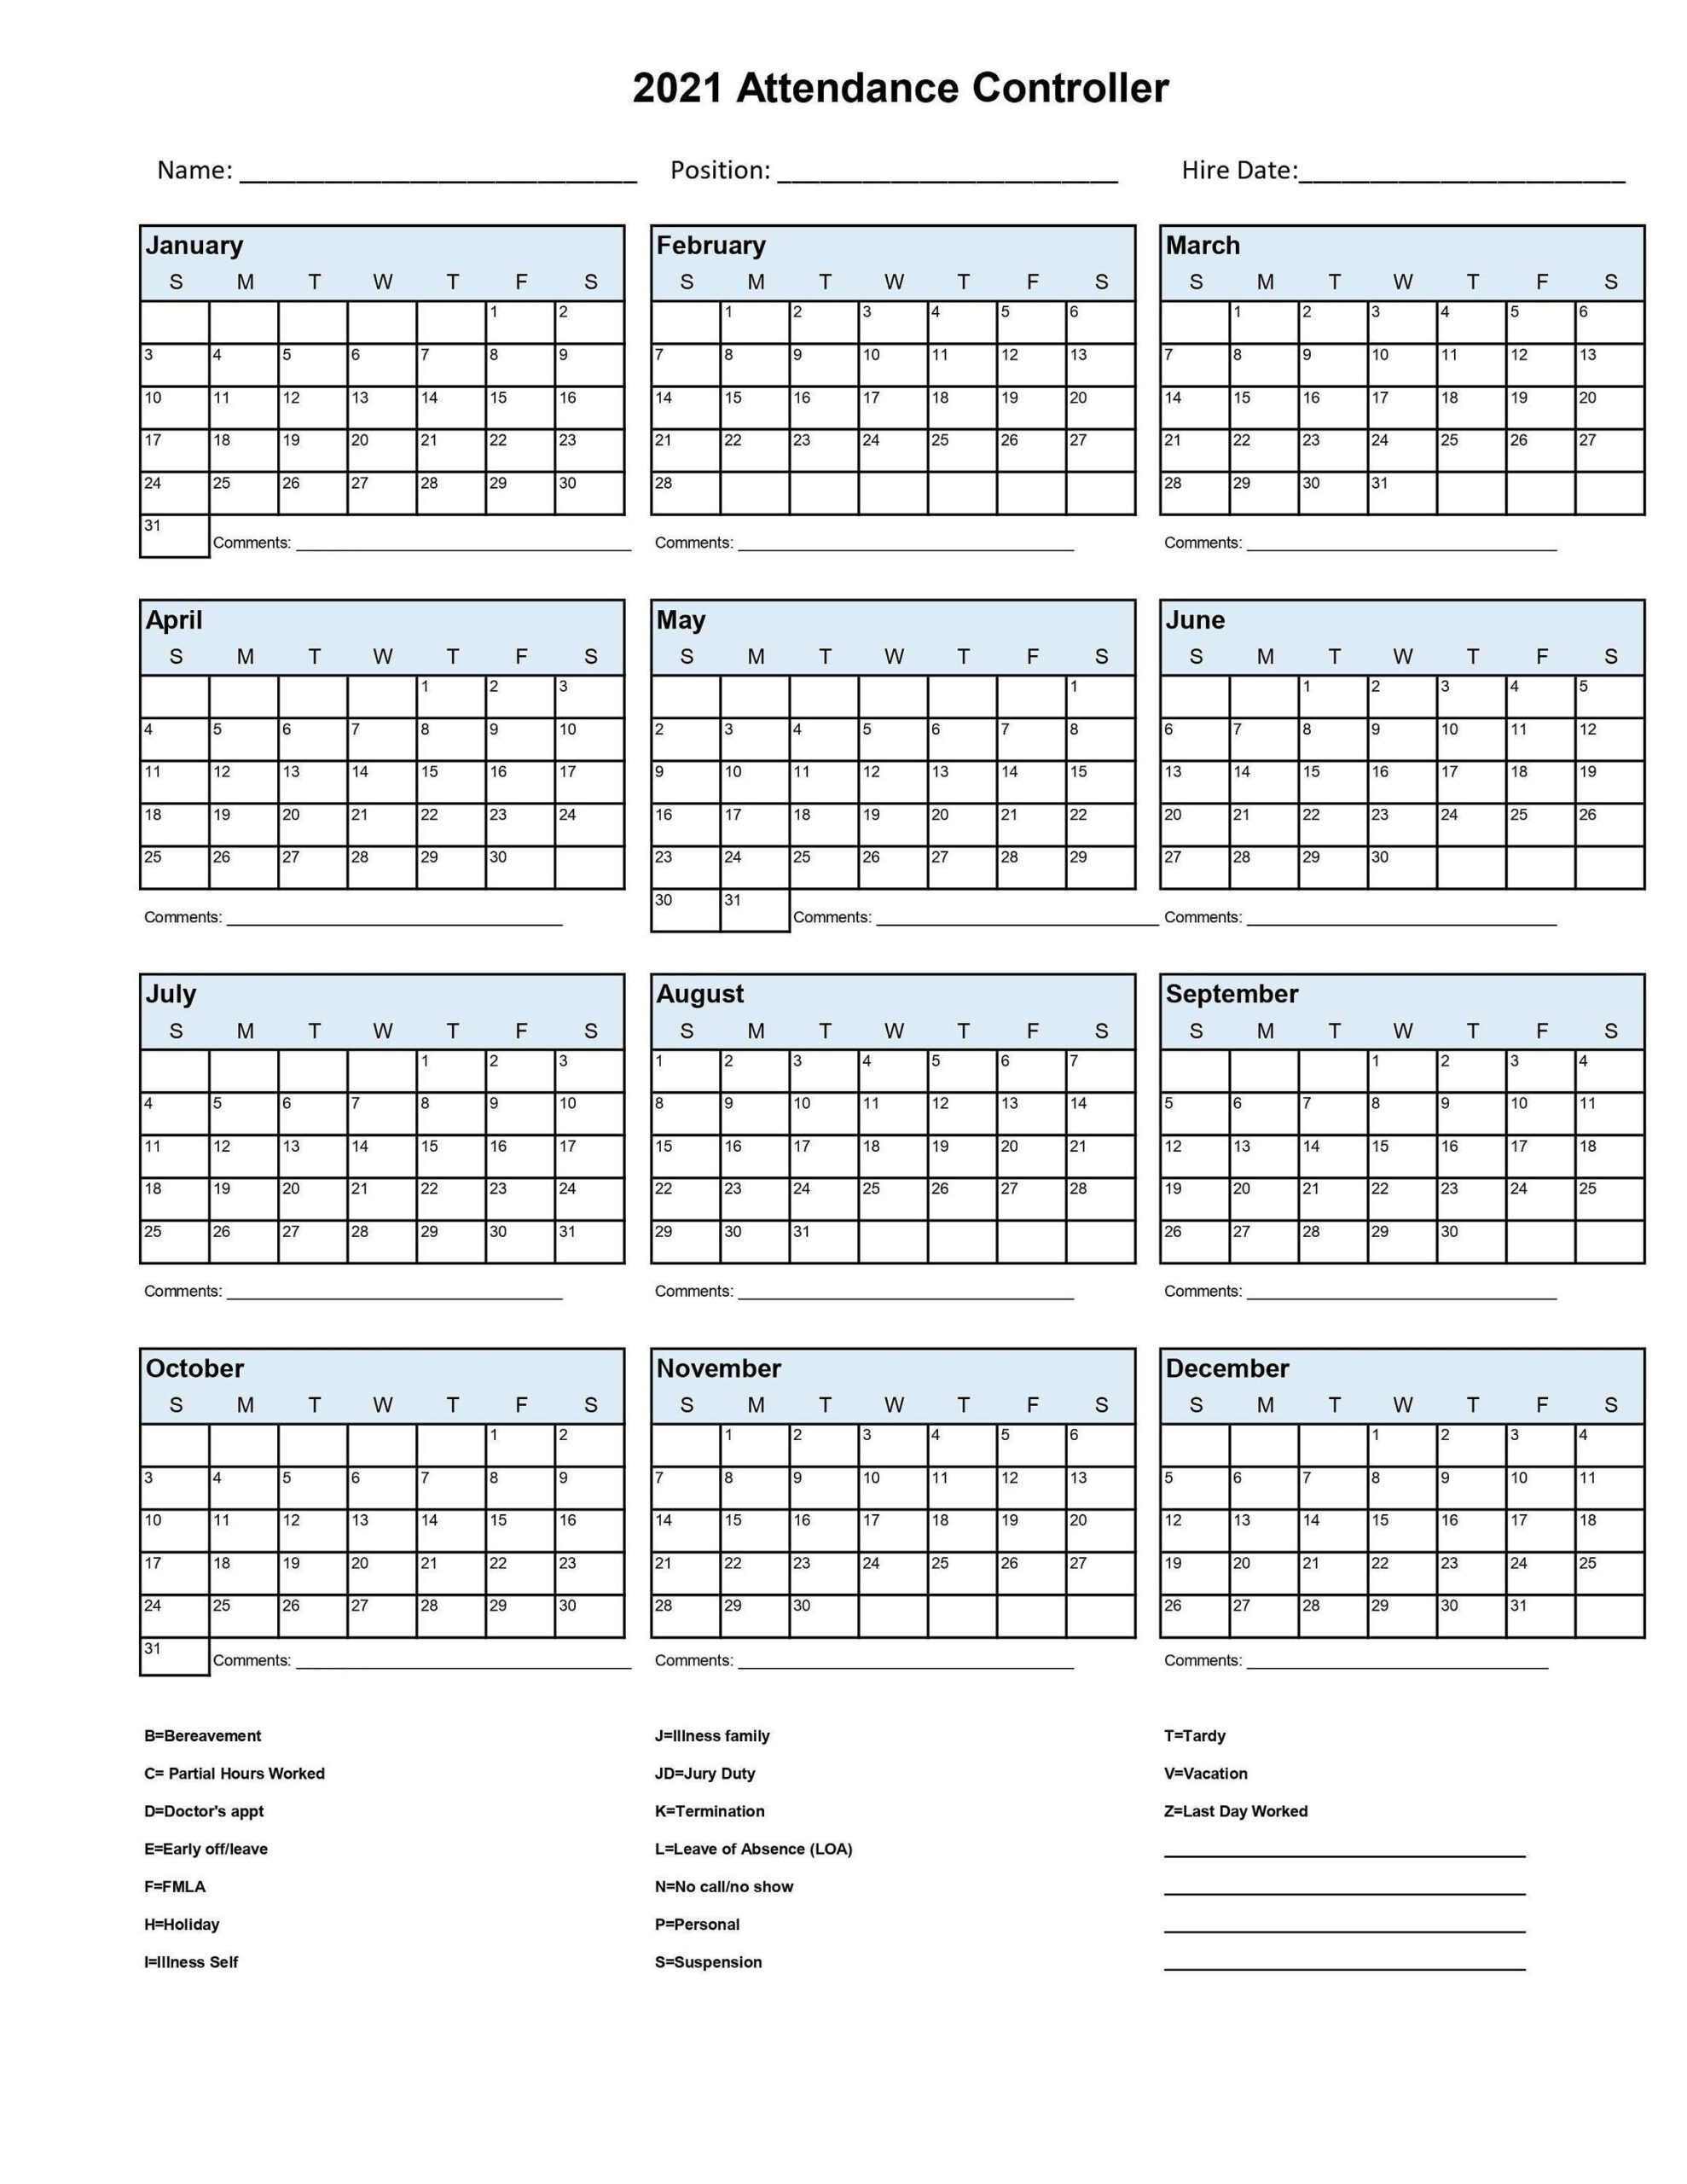 2021 Employee School Attendance Tracker Calendar Employee-Employee Vacation Calendar Grid 2021